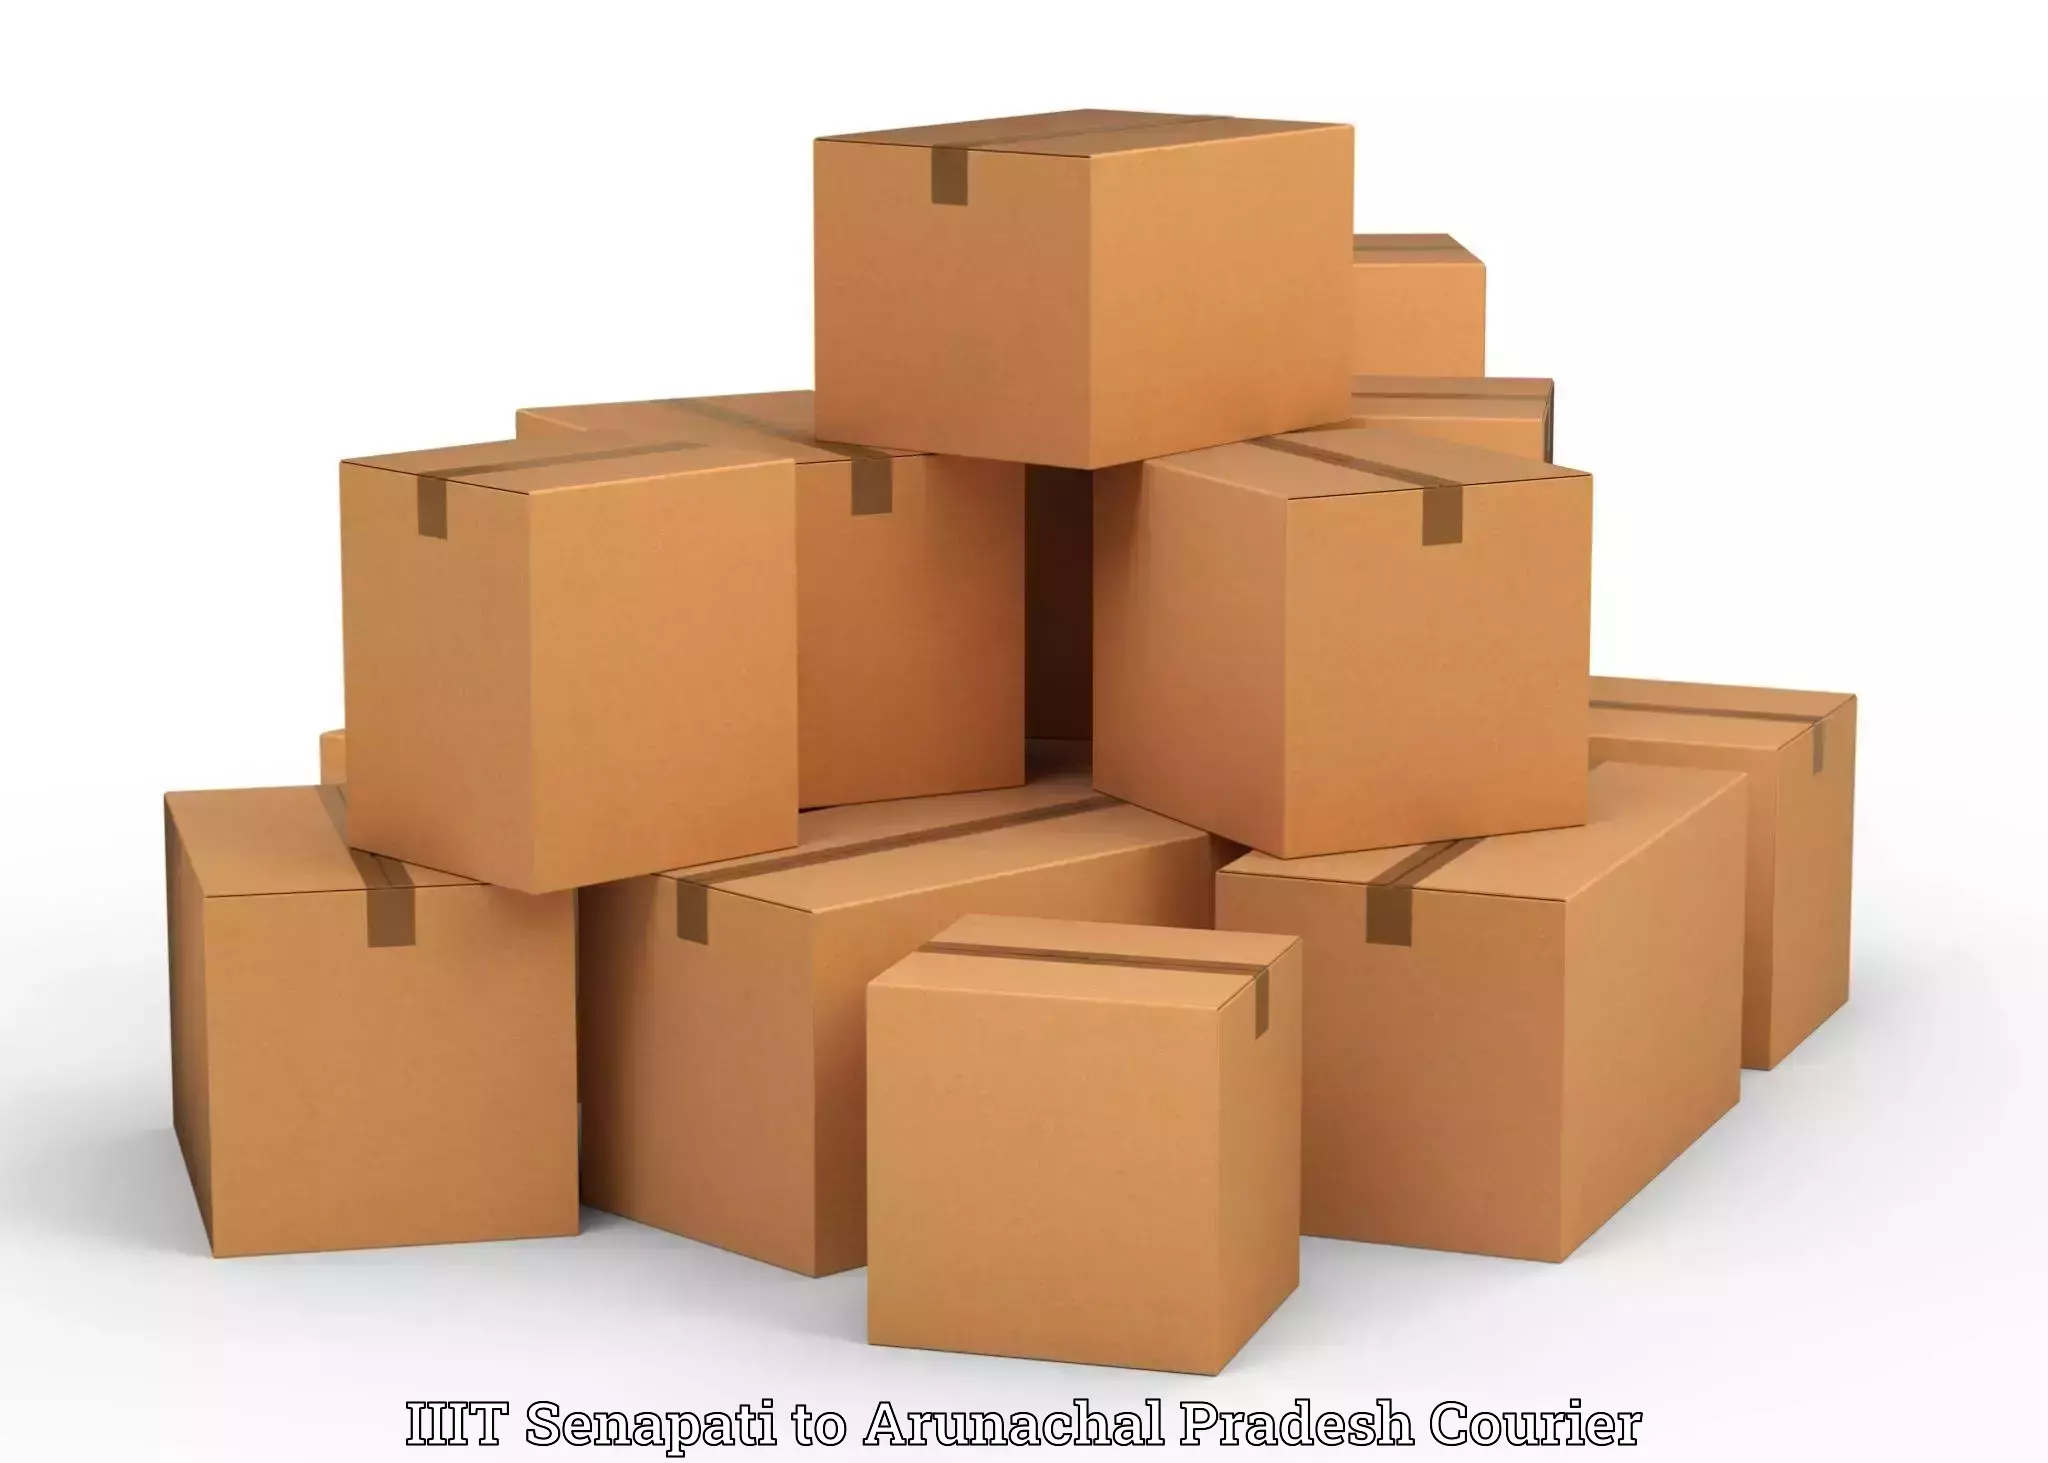 Luggage delivery app IIIT Senapati to Arunachal Pradesh